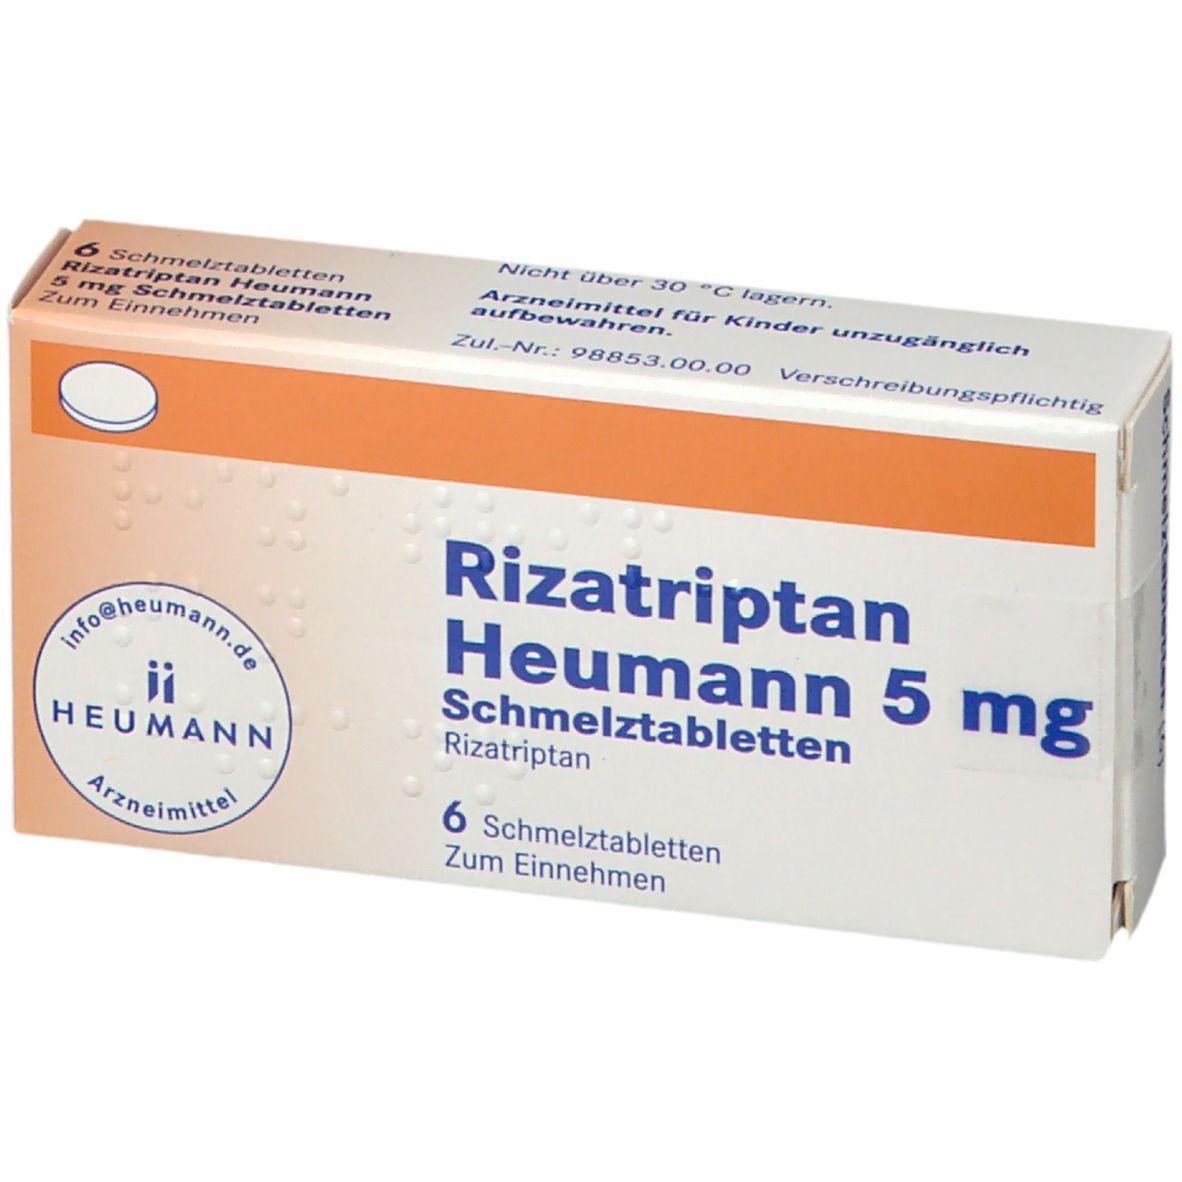 Rizatriptan Heumann 5 mg Schmelztabletten